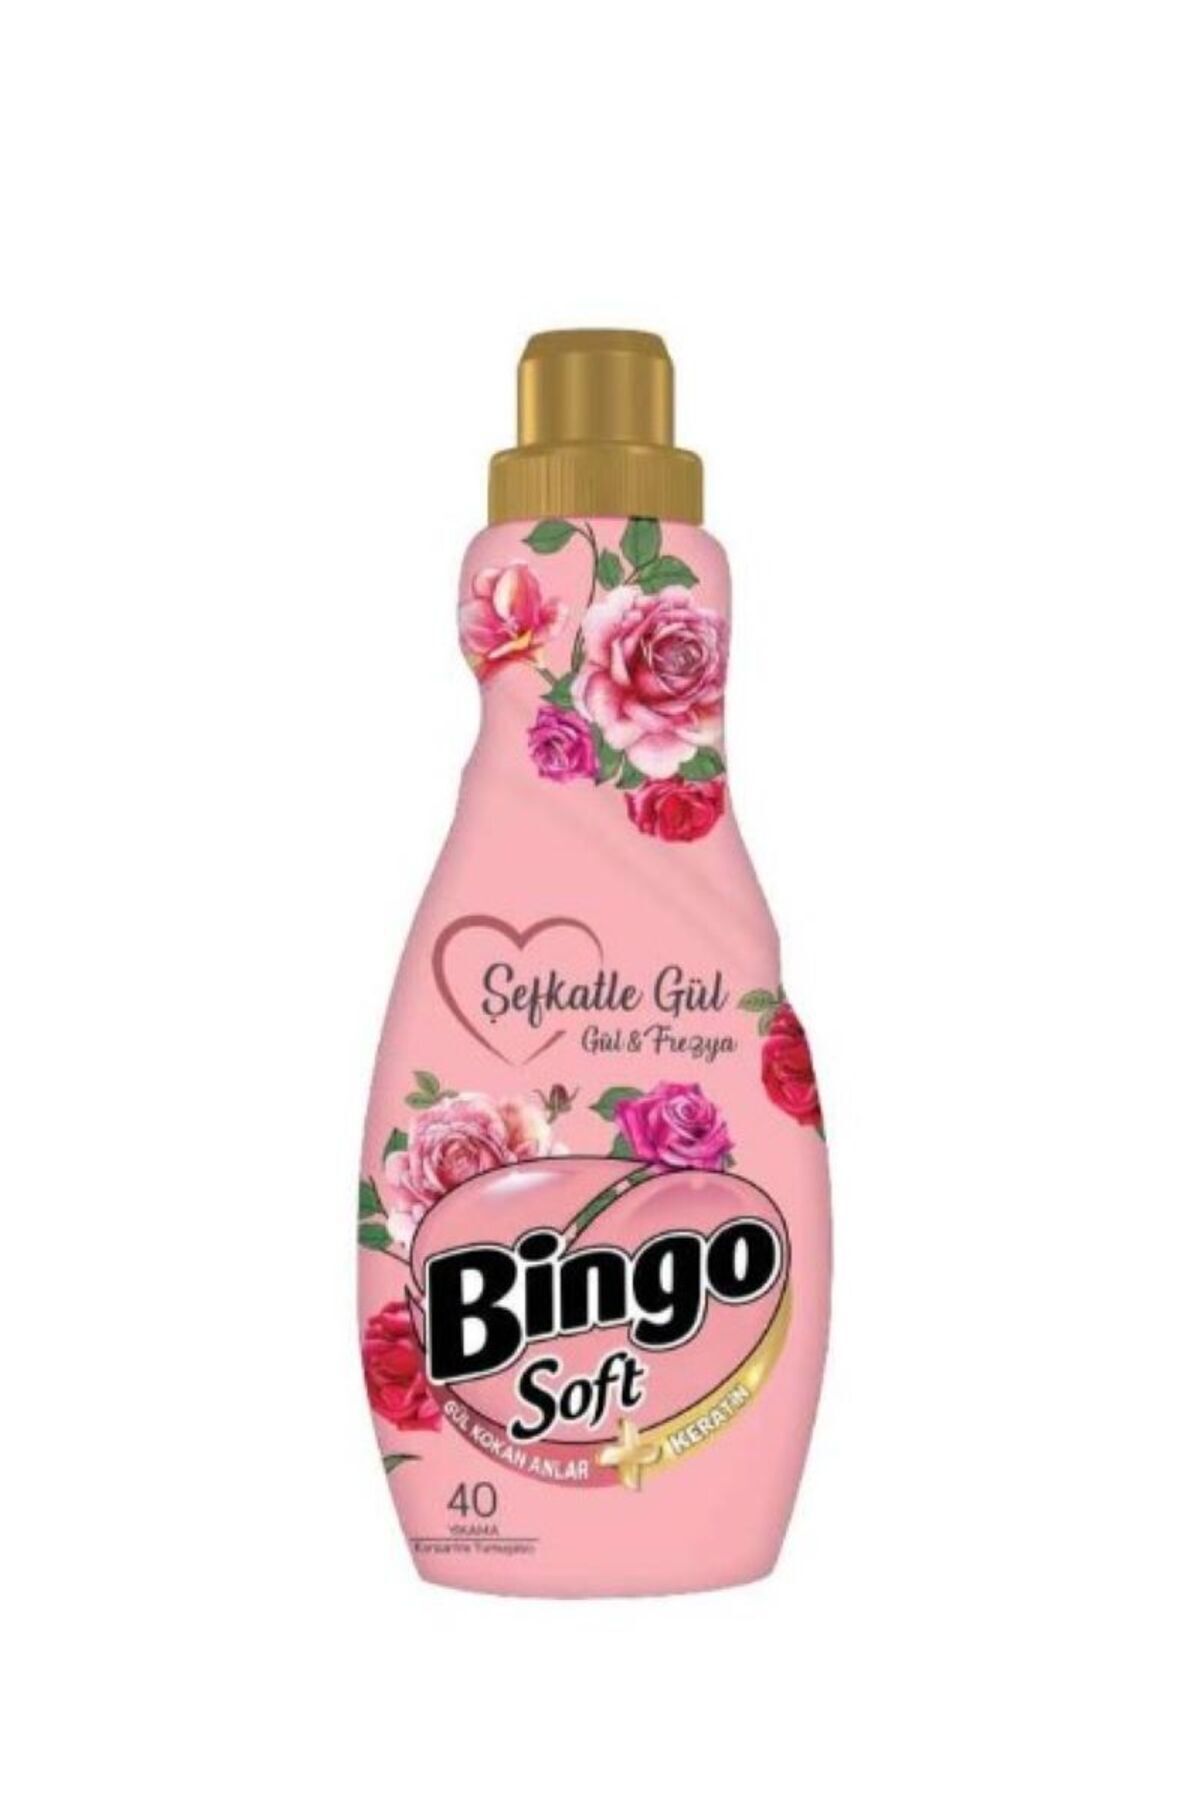 Bingo Soft Gül&Frezya